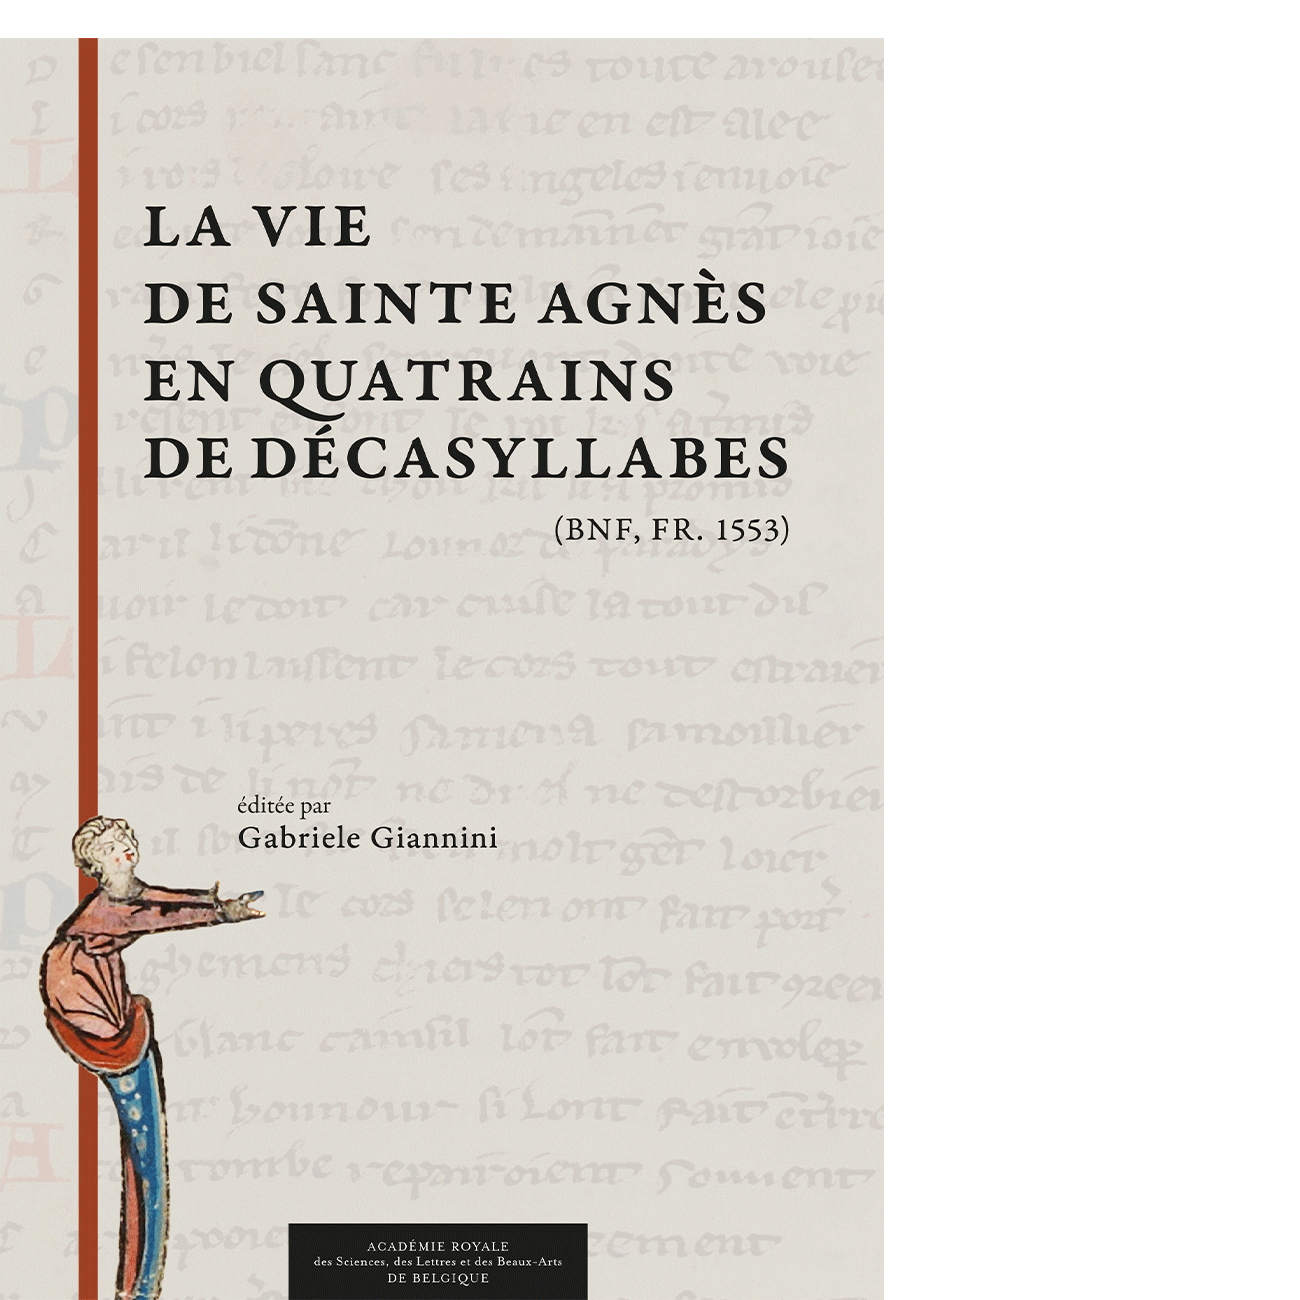 La vie de sainte Agnès en quatrains de décasyllabes (BnF, fr. 1553)